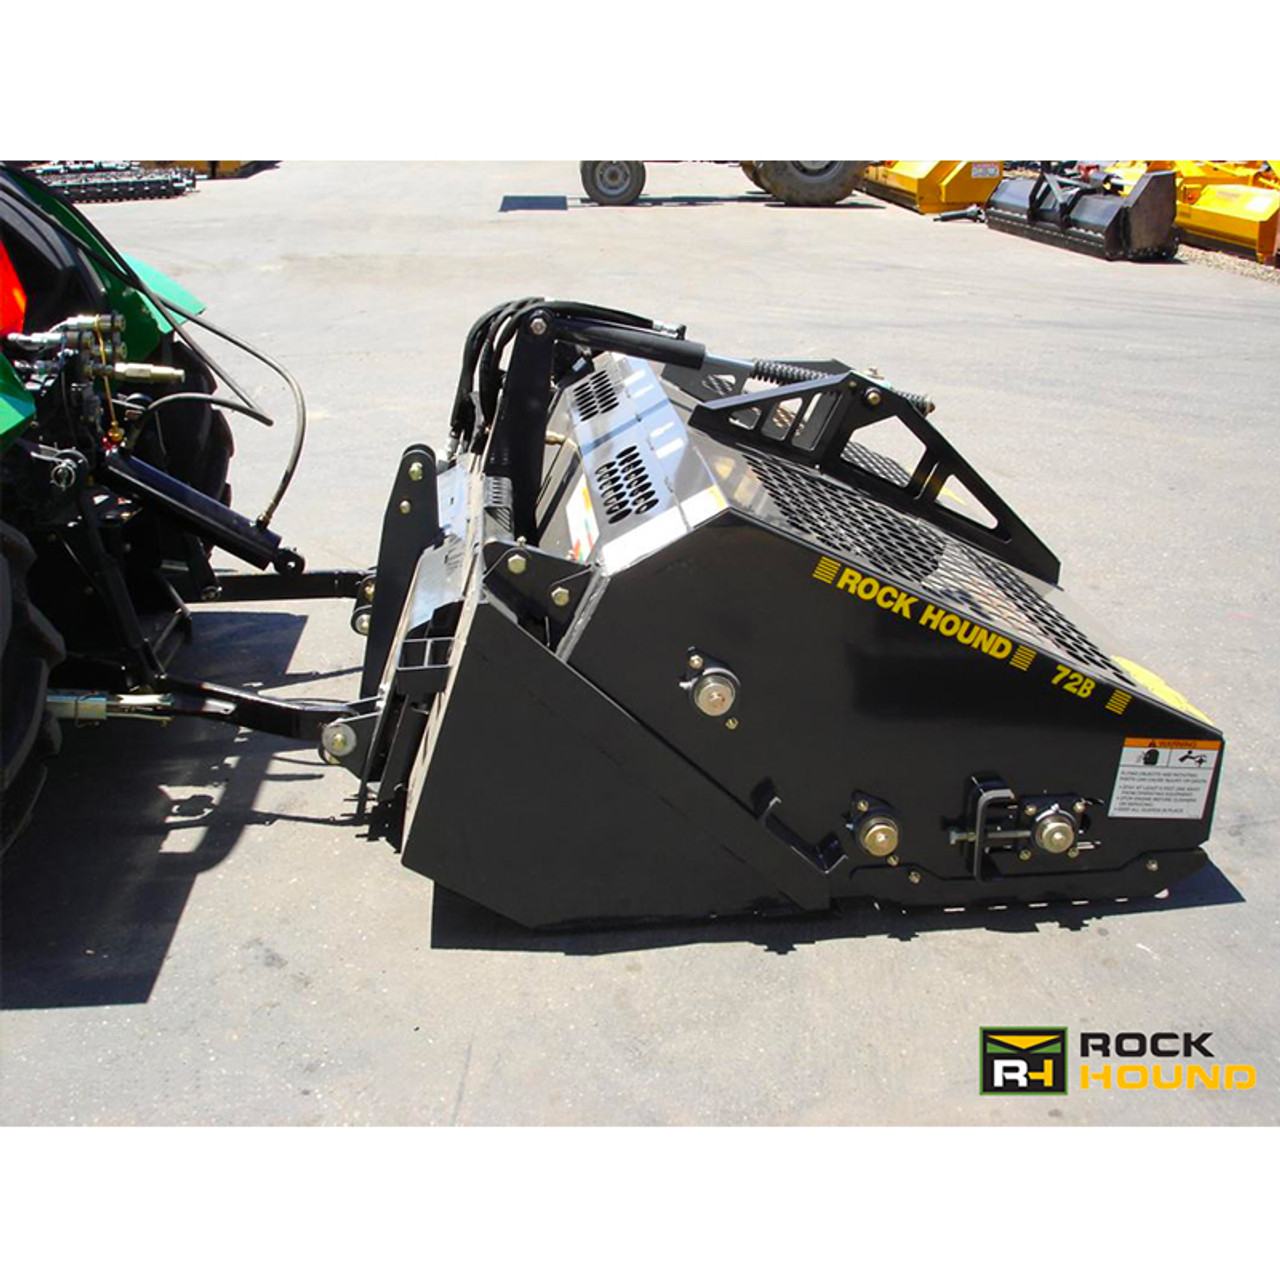 Rockhound Rock Picker - 72  Tractor/Skid Steer Attachments